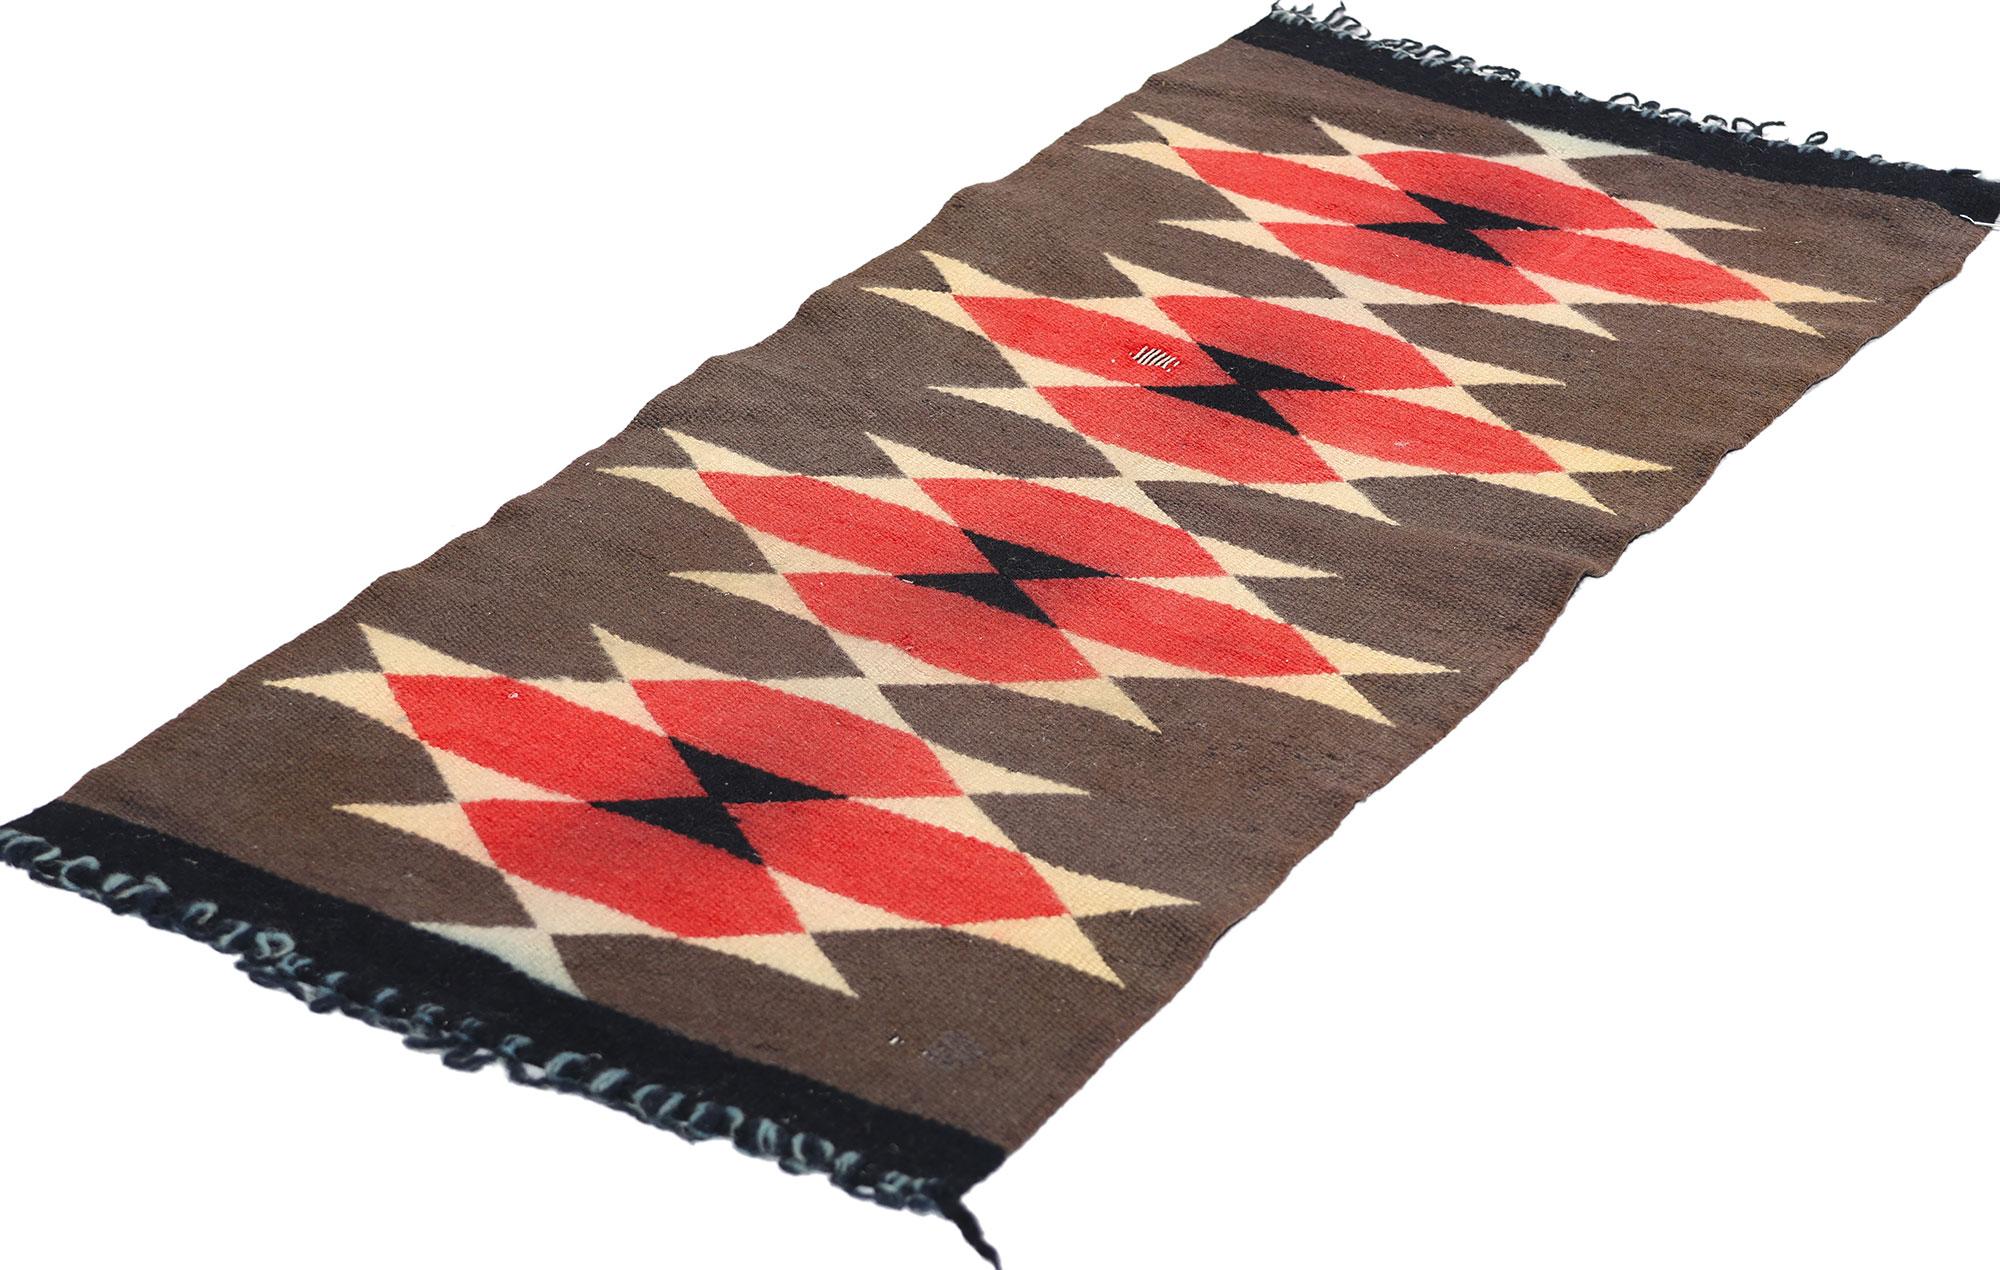 78749 Antiker Ganado-Navajo-Teppich,  01'03 x 02'10. Ganado-Navajo-Teppiche sind handgewebte Textilien aus der Region Ganado im Nordosten Arizonas, die von Navajo-Kunsthandwerkern hauptsächlich aus der Wolle von Navajo-Churro-Schafen aus der Region